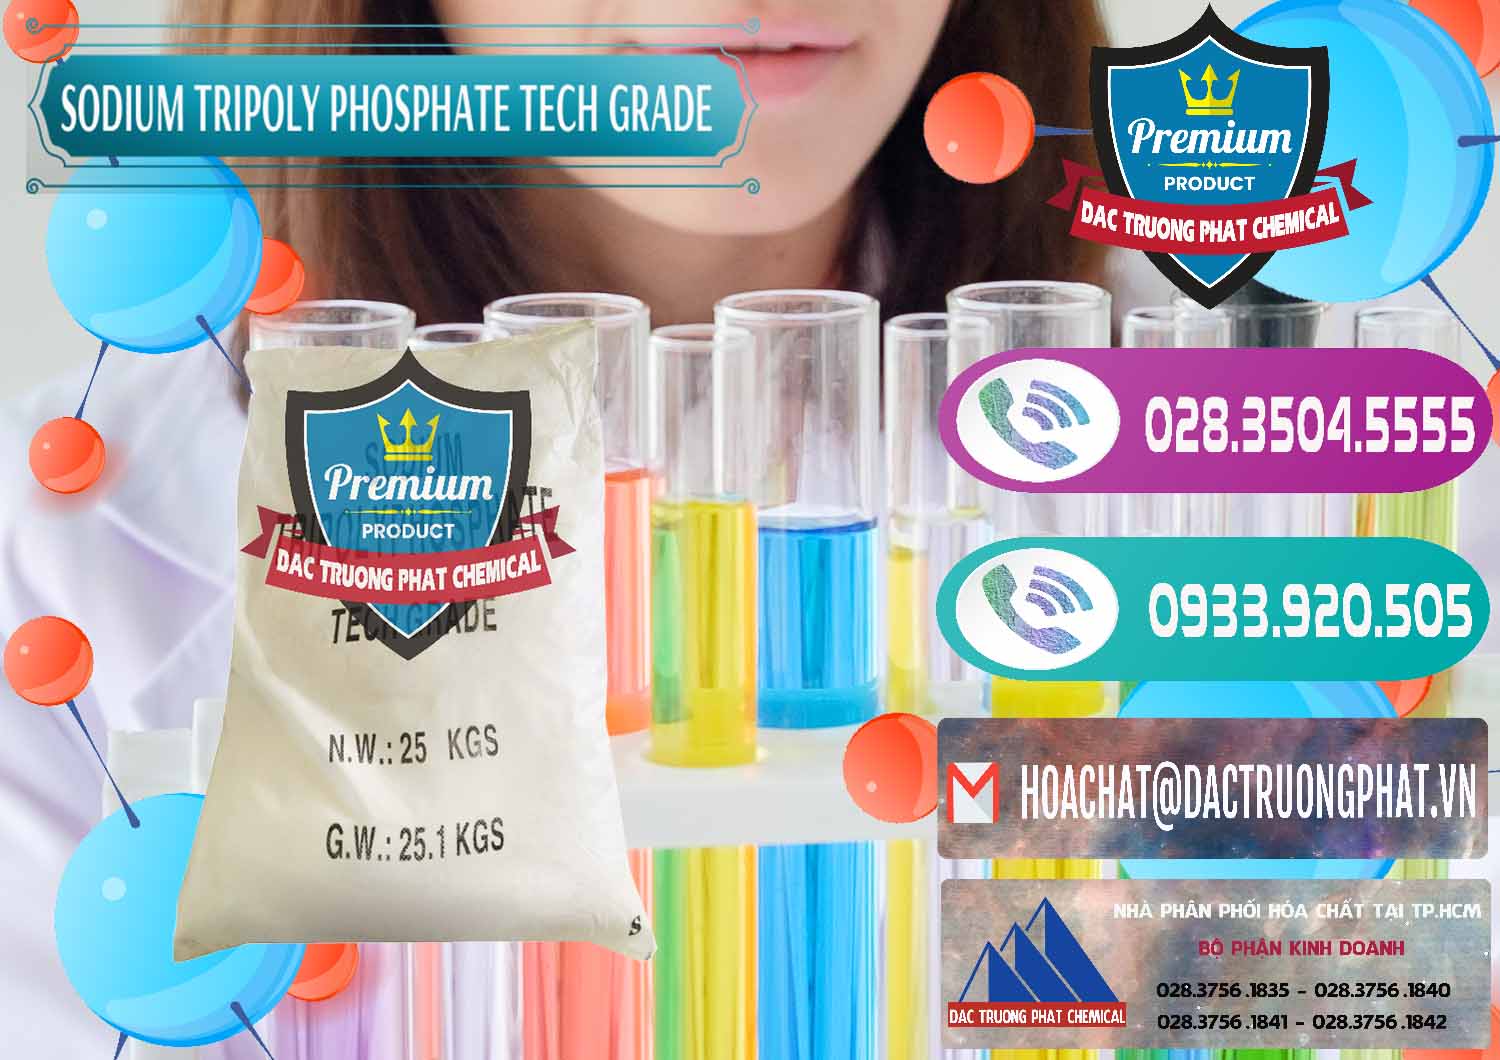 Nơi chuyên bán ( cung ứng ) Sodium Tripoly Phosphate - STPP Tech Grade Trung Quốc China - 0453 - Cty cung cấp và phân phối hóa chất tại TP.HCM - hoachatxulynuoc.com